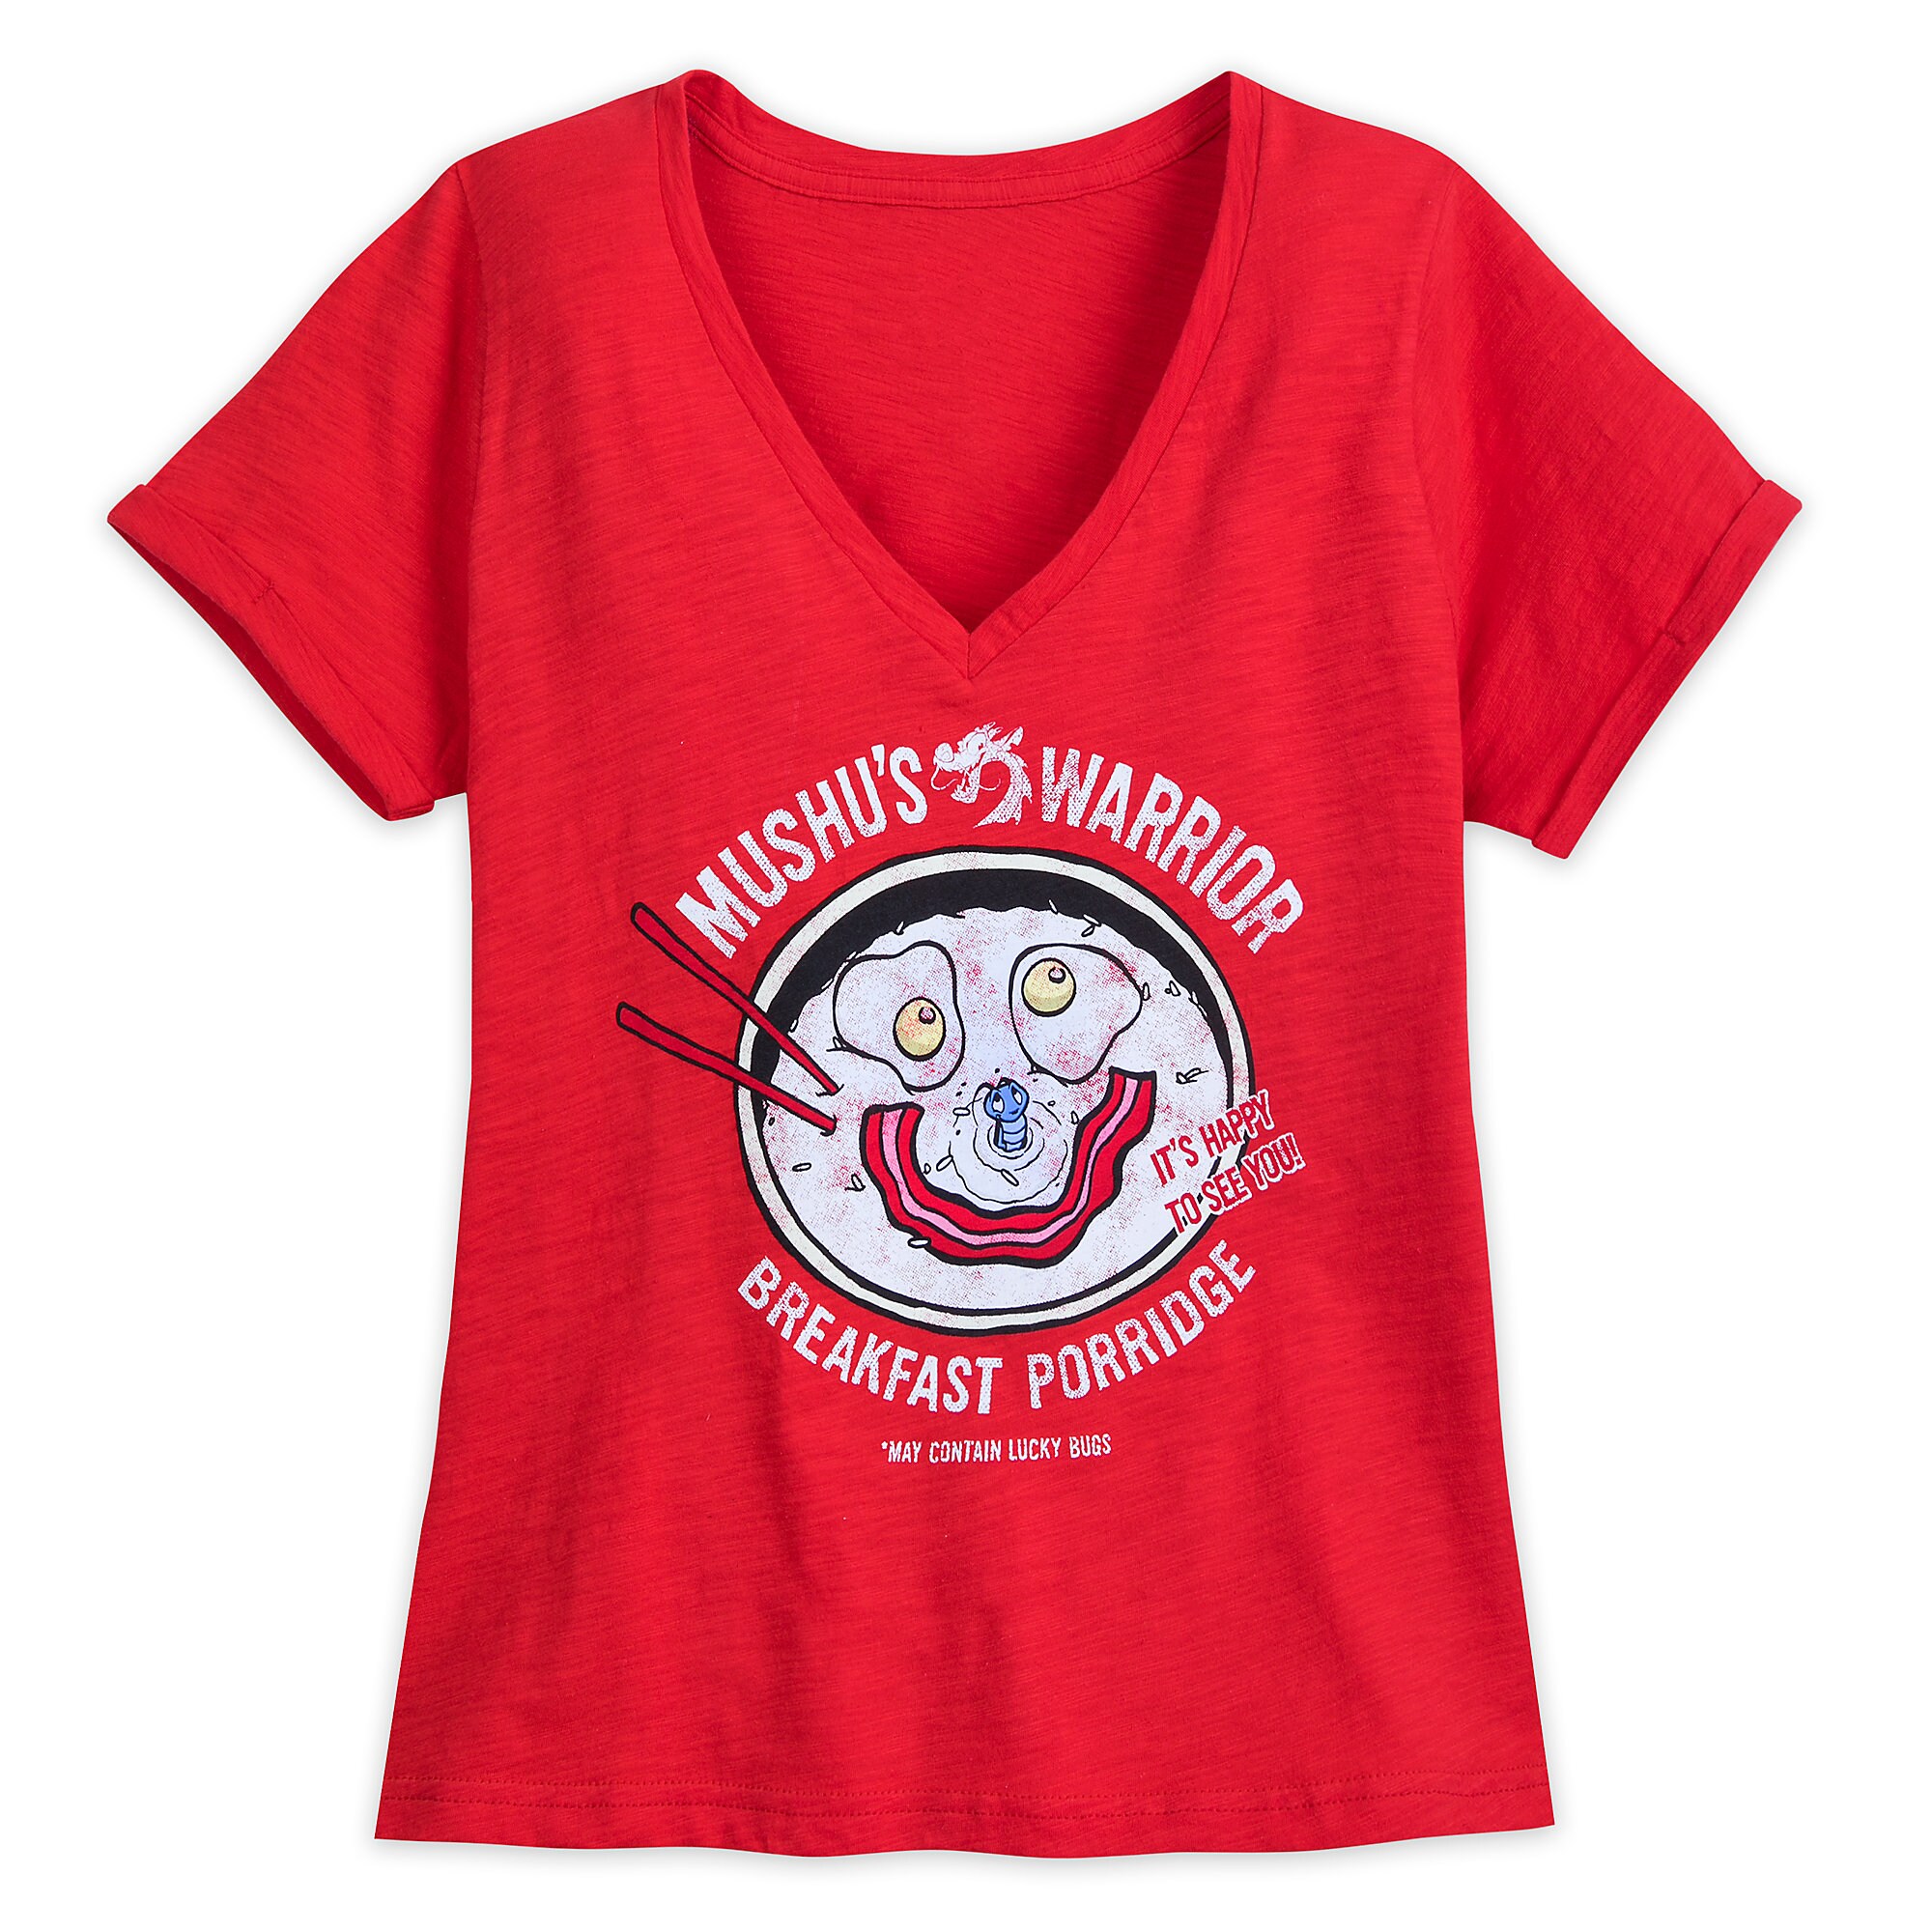 Mushu and Cri-Kee Fashion T-shirt for Women - Mulan